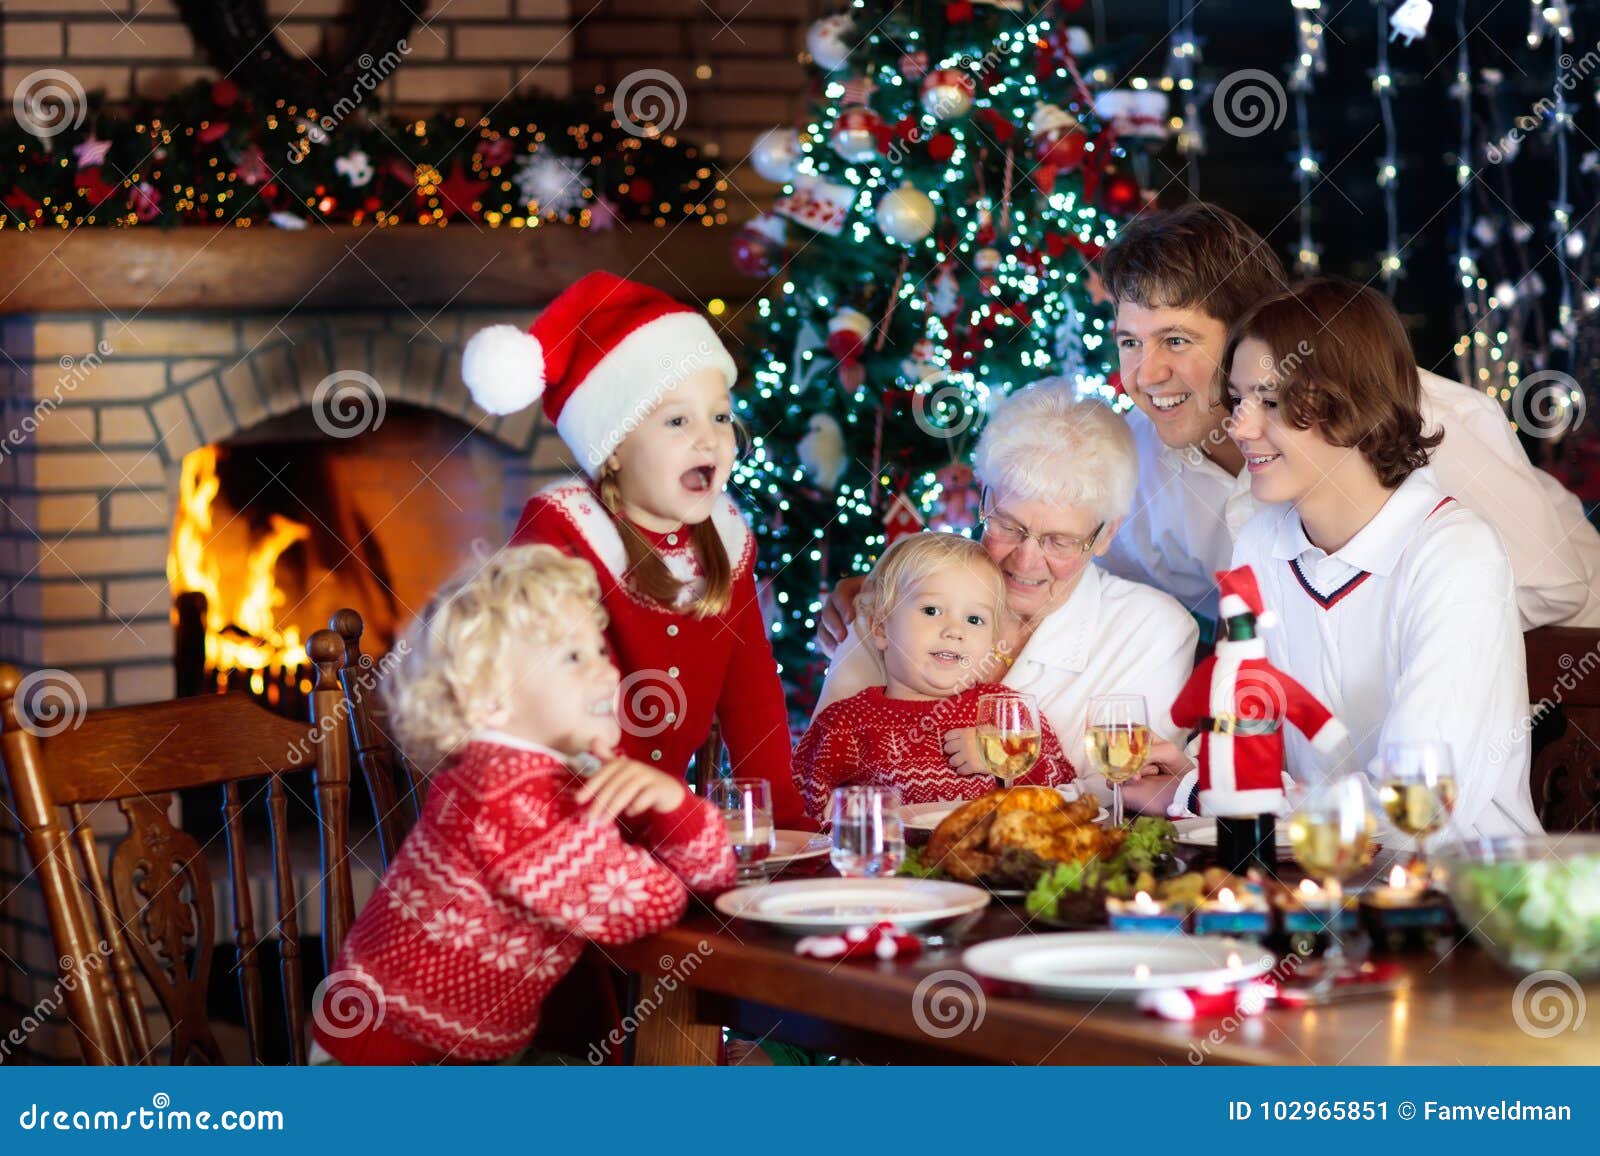 Foto Di Natale Famiglia.Pranzo Di Natale Famiglia Con I Bambini All Albero Di Natale Immagine Stock Immagine Di Generazione Decorato 102965851